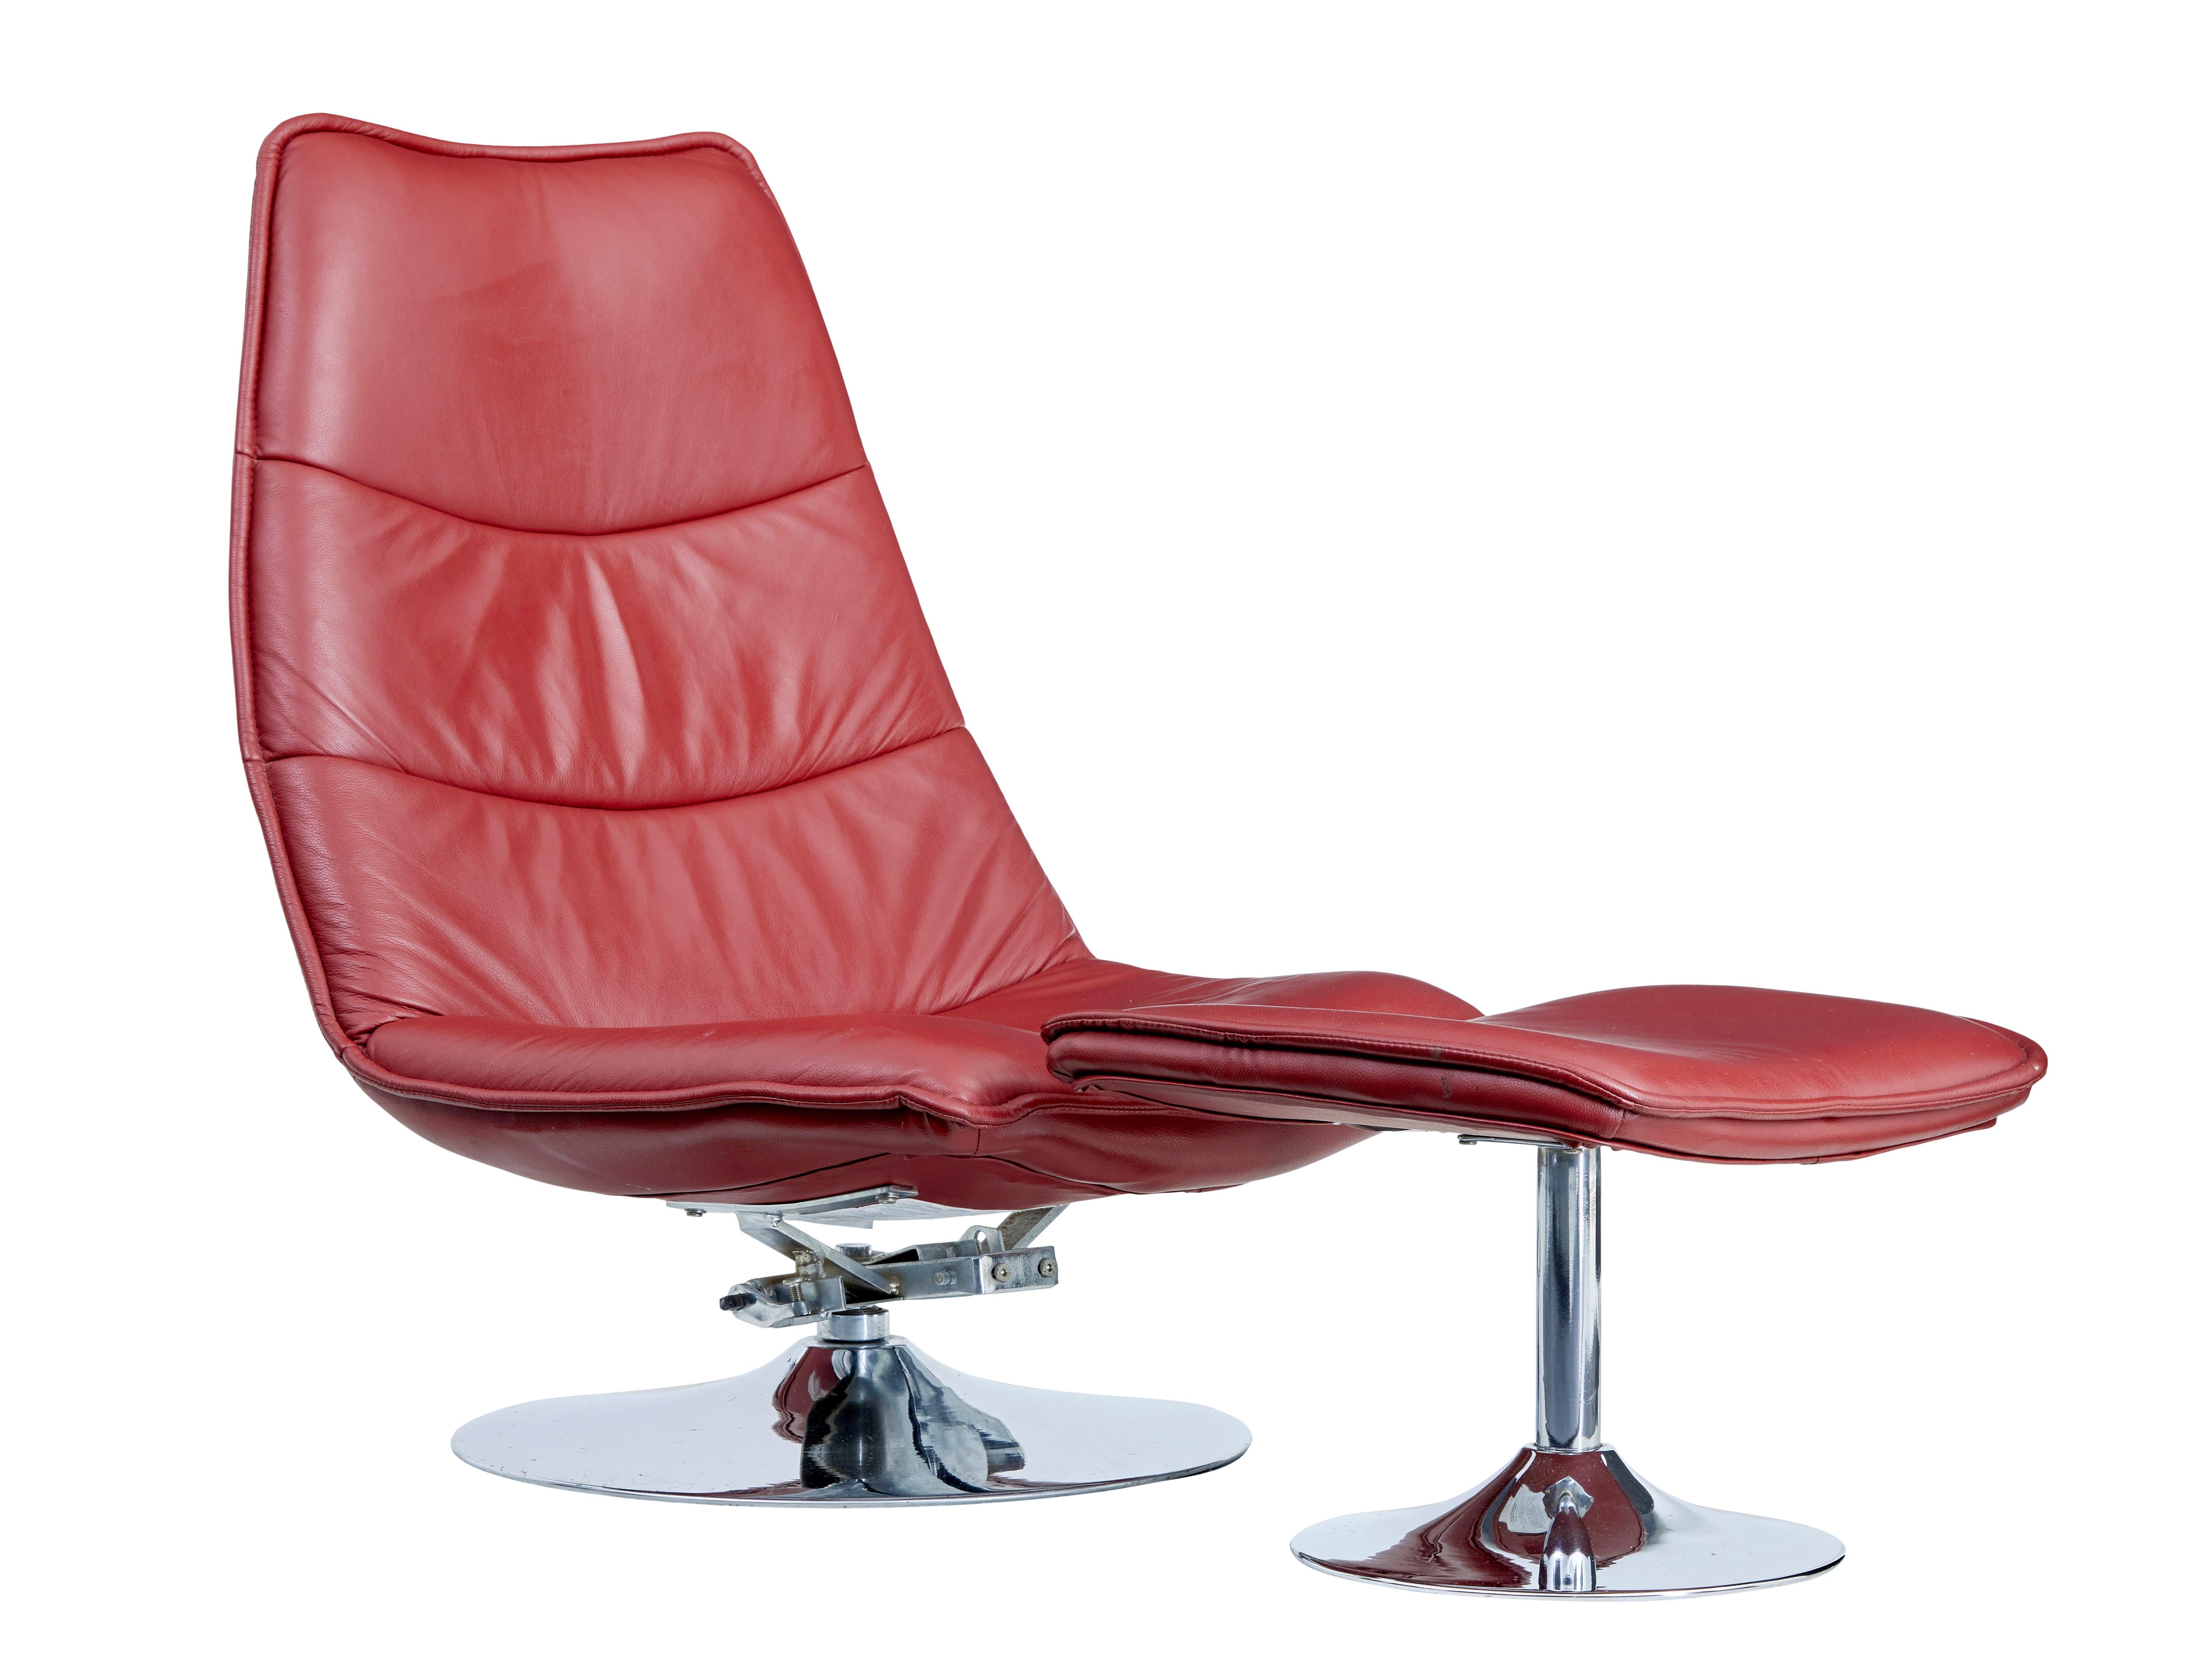 Chaise et tabouret en cuir et chrome du 20e siècle vers 1980.

Chaise longue de bonne qualité avec tabouret assorti pour quand vous avez besoin de mettre vos pieds, siège profond et large très confortable.

Chaise équipée d'un mécanisme